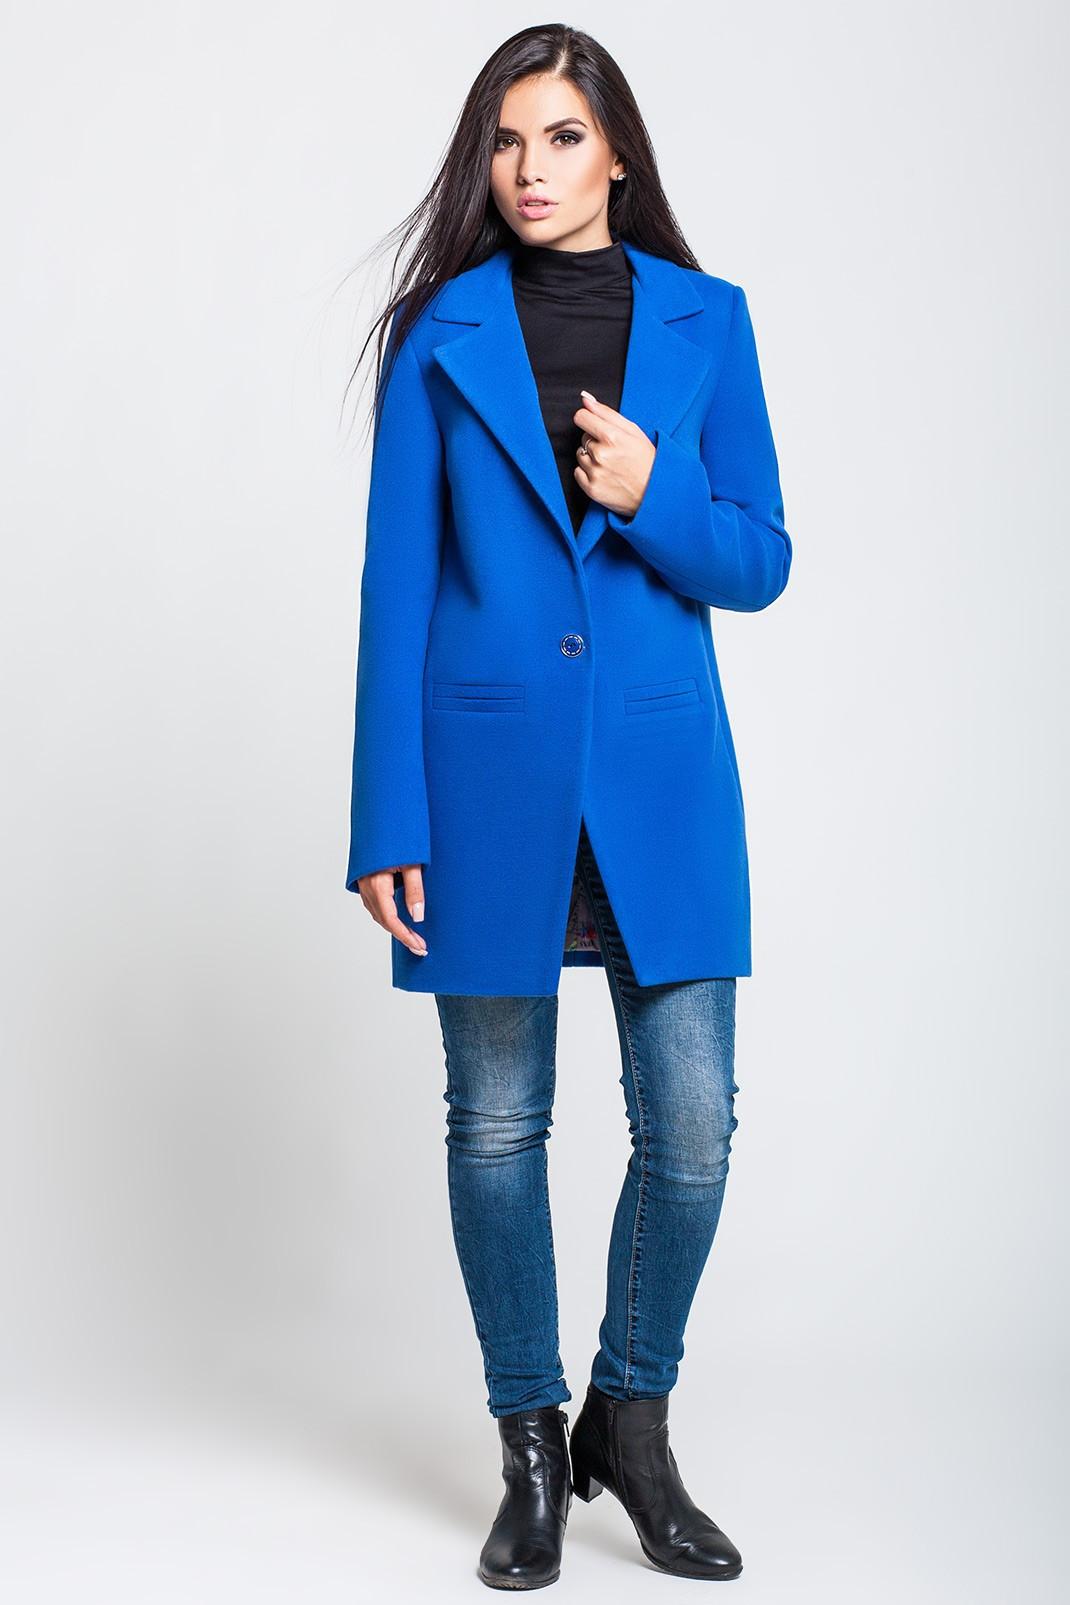 Синее пальто купить. Синее пальто женское. Пальто синего цвета. Темно синее пальто женское. Синее полупальто.